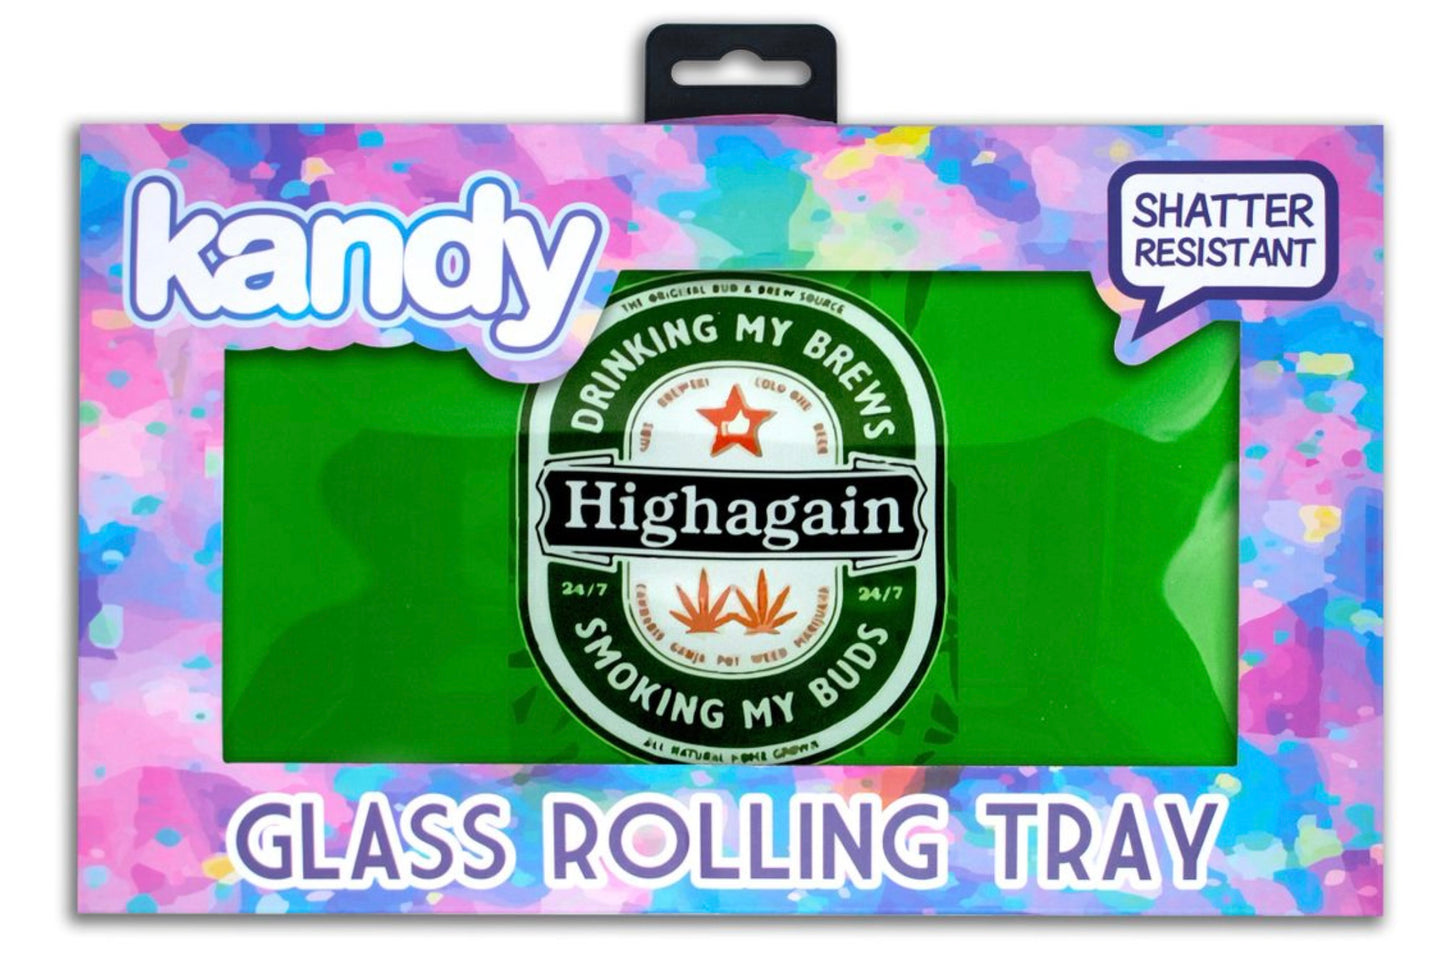 Kandy Smoke “Highagain” Glass Rolling Tray yoga smokes smoke shop, dispensary, local dispensary, smokeshop near me, port st lucie smoke shop, smoke shop in port st lucie, smoke shop in port saint lucie, smoke shop in florida, Yoga Smokes Buy RAW Rolling Papers USA -site:*.ca -site:*.co.uk -okna-mk.ru -biohazardinc.com -amazon.sa -marijuanapackaging.com -site:*.eu -republic -420packaging.com -ganjapreneur.com -tedtobacco.com -alibaba.com -site:amazon.com -site:ebay.com -etsy.com